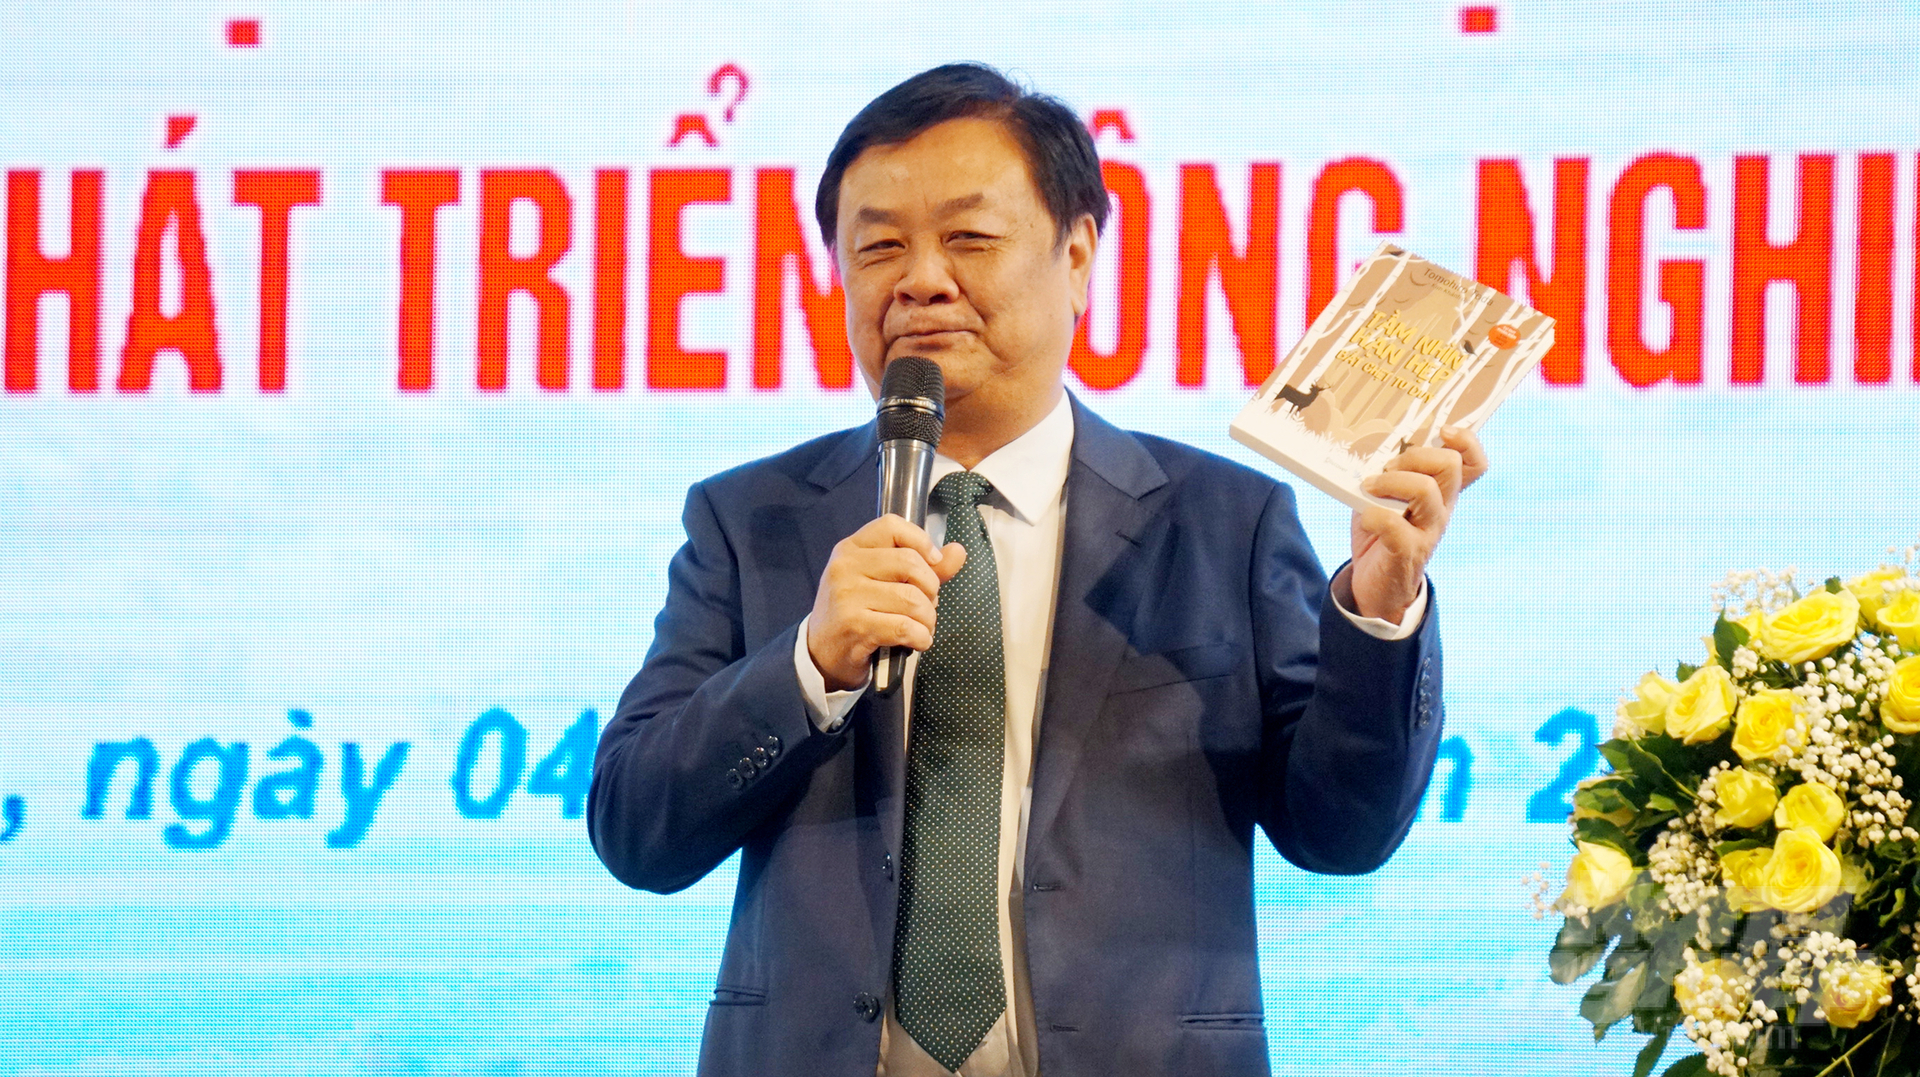 Bộ trưởng Bộ NN-PTNT Lê Minh Hoan giới thiệu với hội nghị về cuốn sách 'Tầm nhìn hạn hẹp, bắt chẹt tư duy'. Ảnh: Nguyễn Thủy.